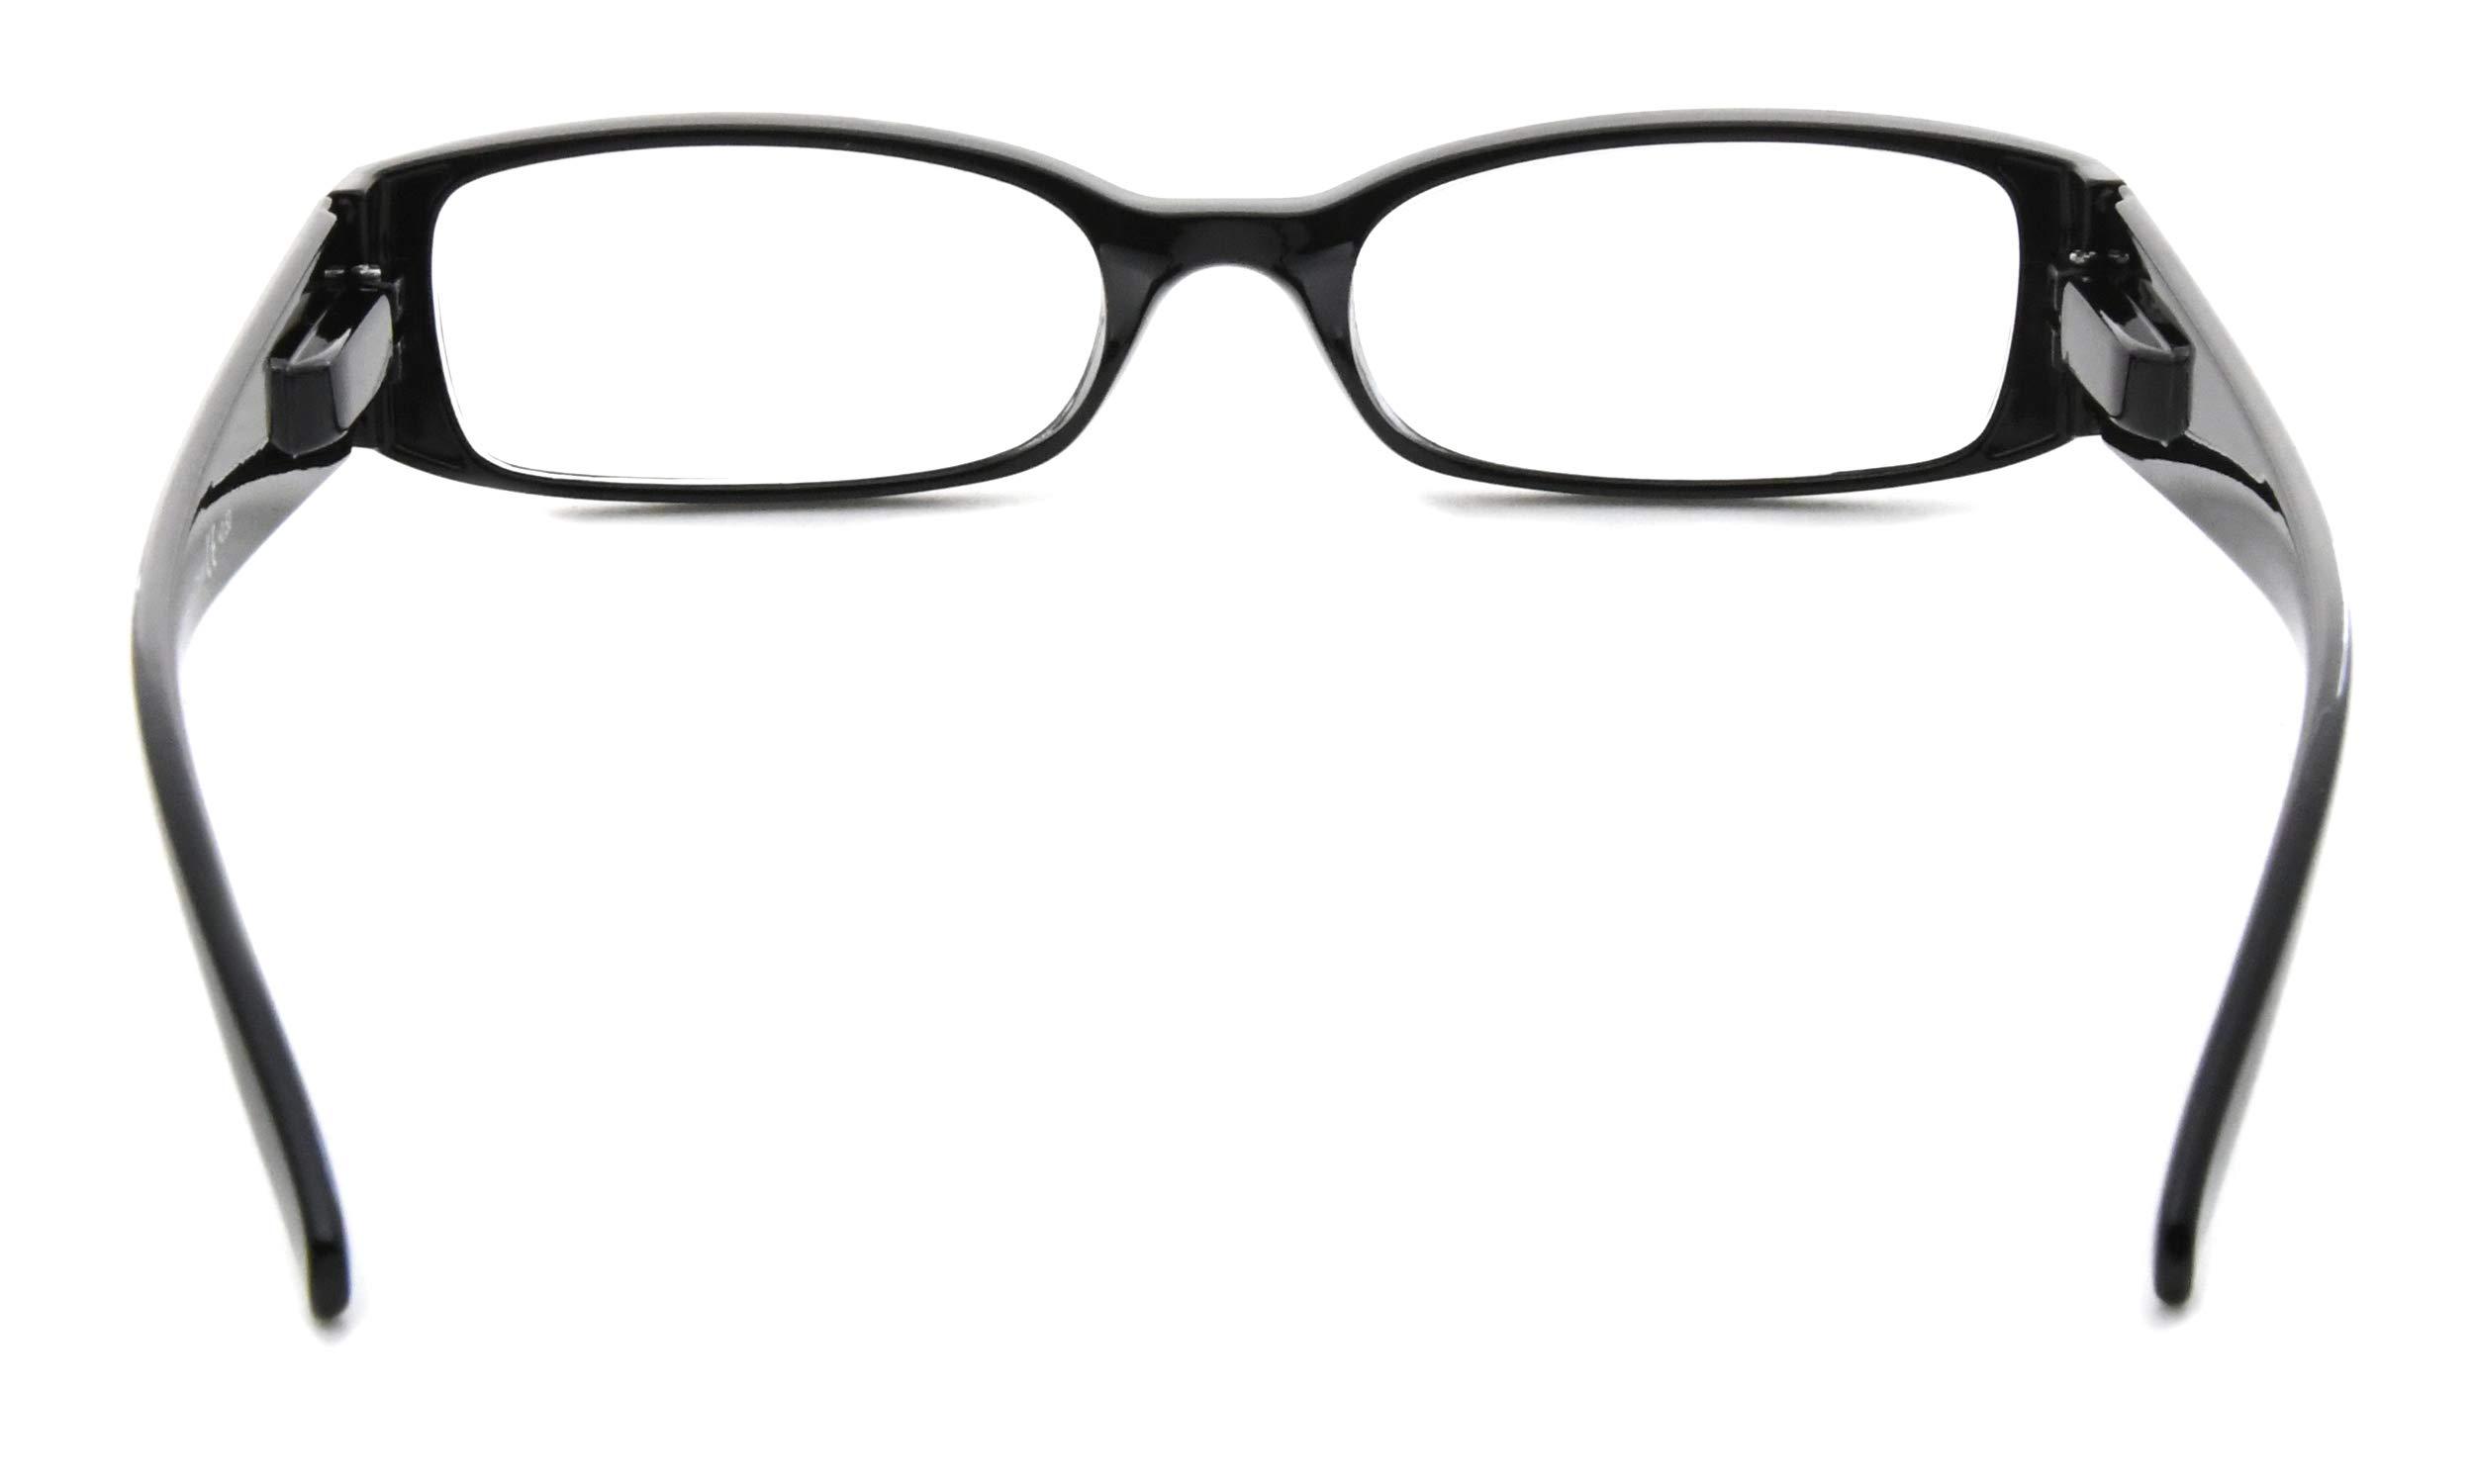 Eyekepper 5 Pairs Reading Glasses for Women Reading +3.00 Black Frame Reading Eyeglasses 4